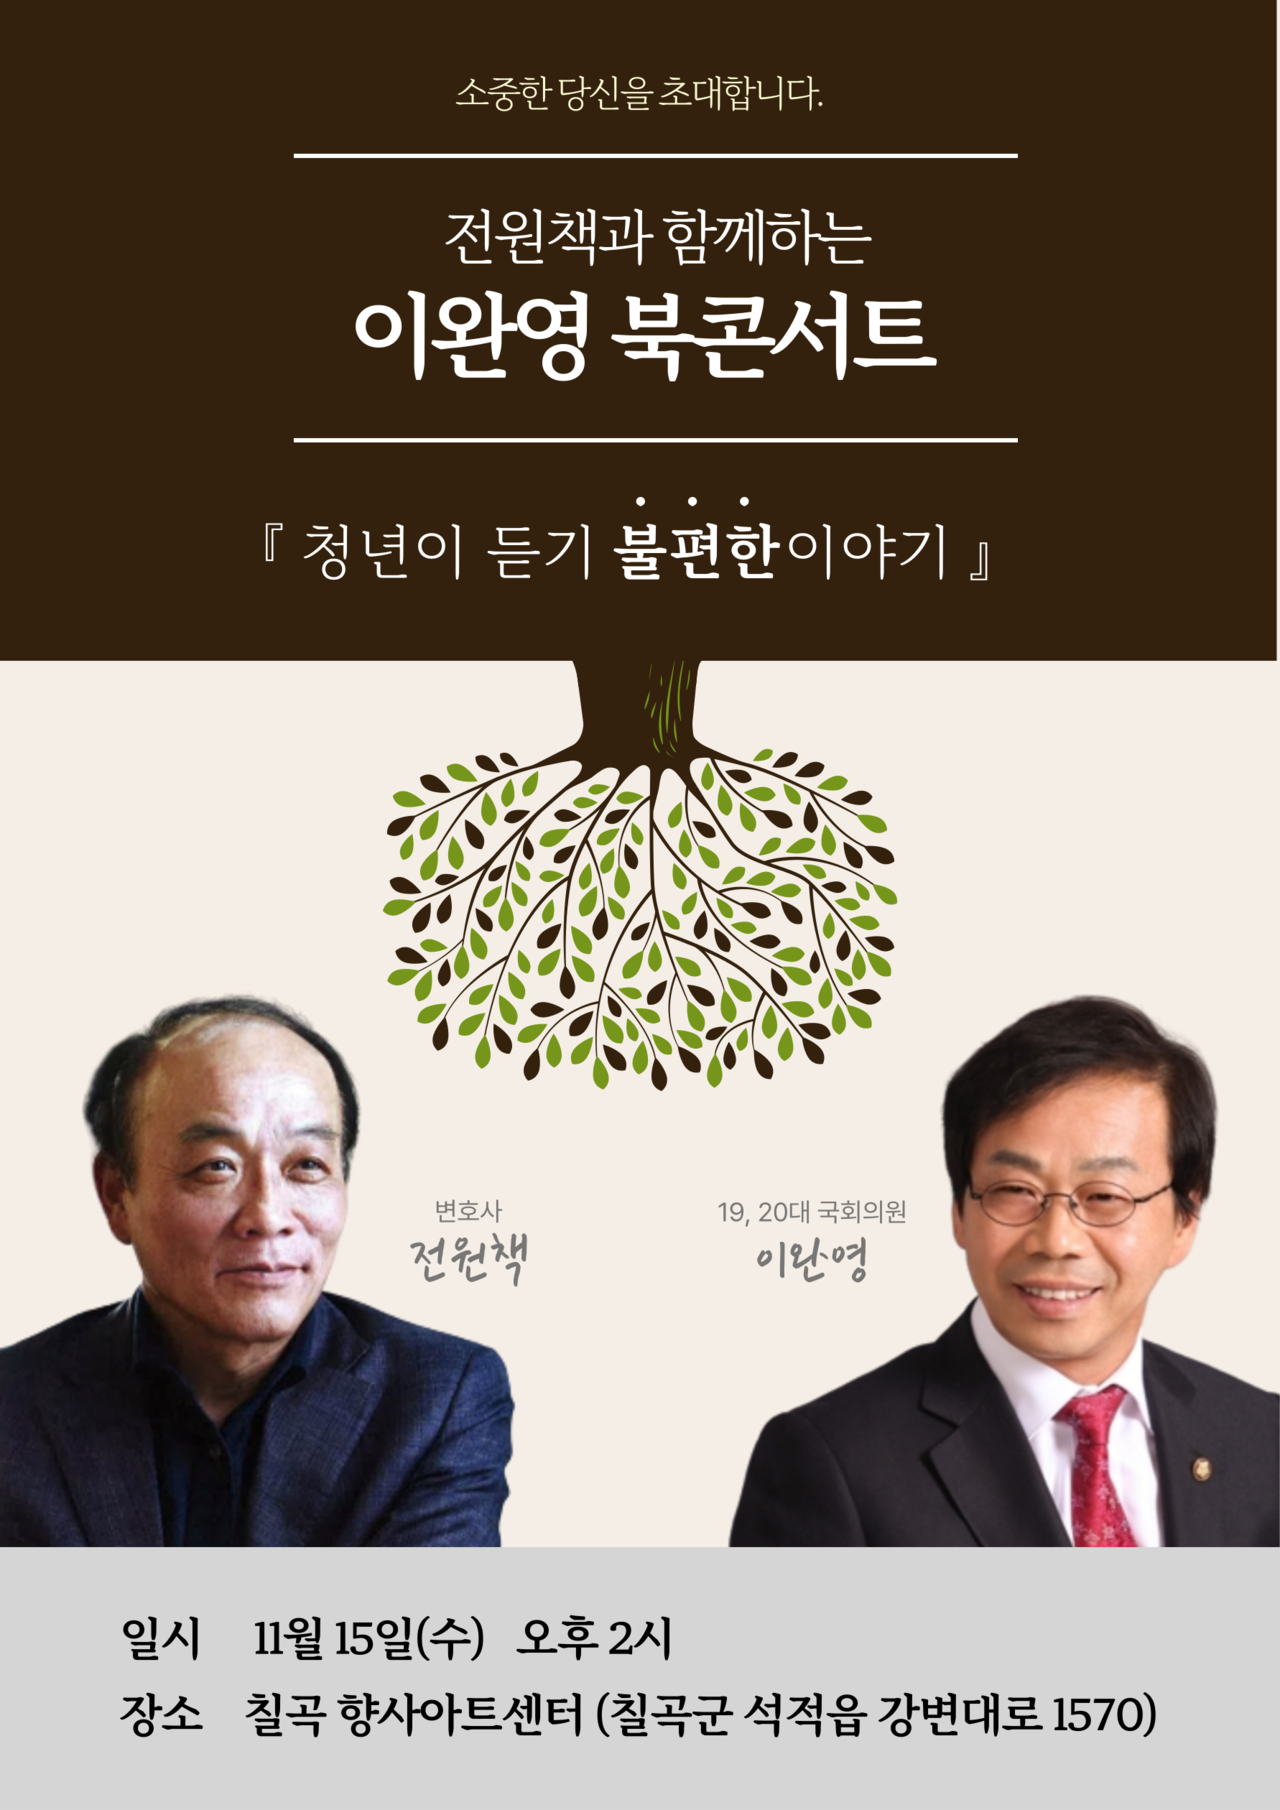 이완영 전 국회의원 신규 저서 '청년이 듣기 불편한 이야기' 북콘서트